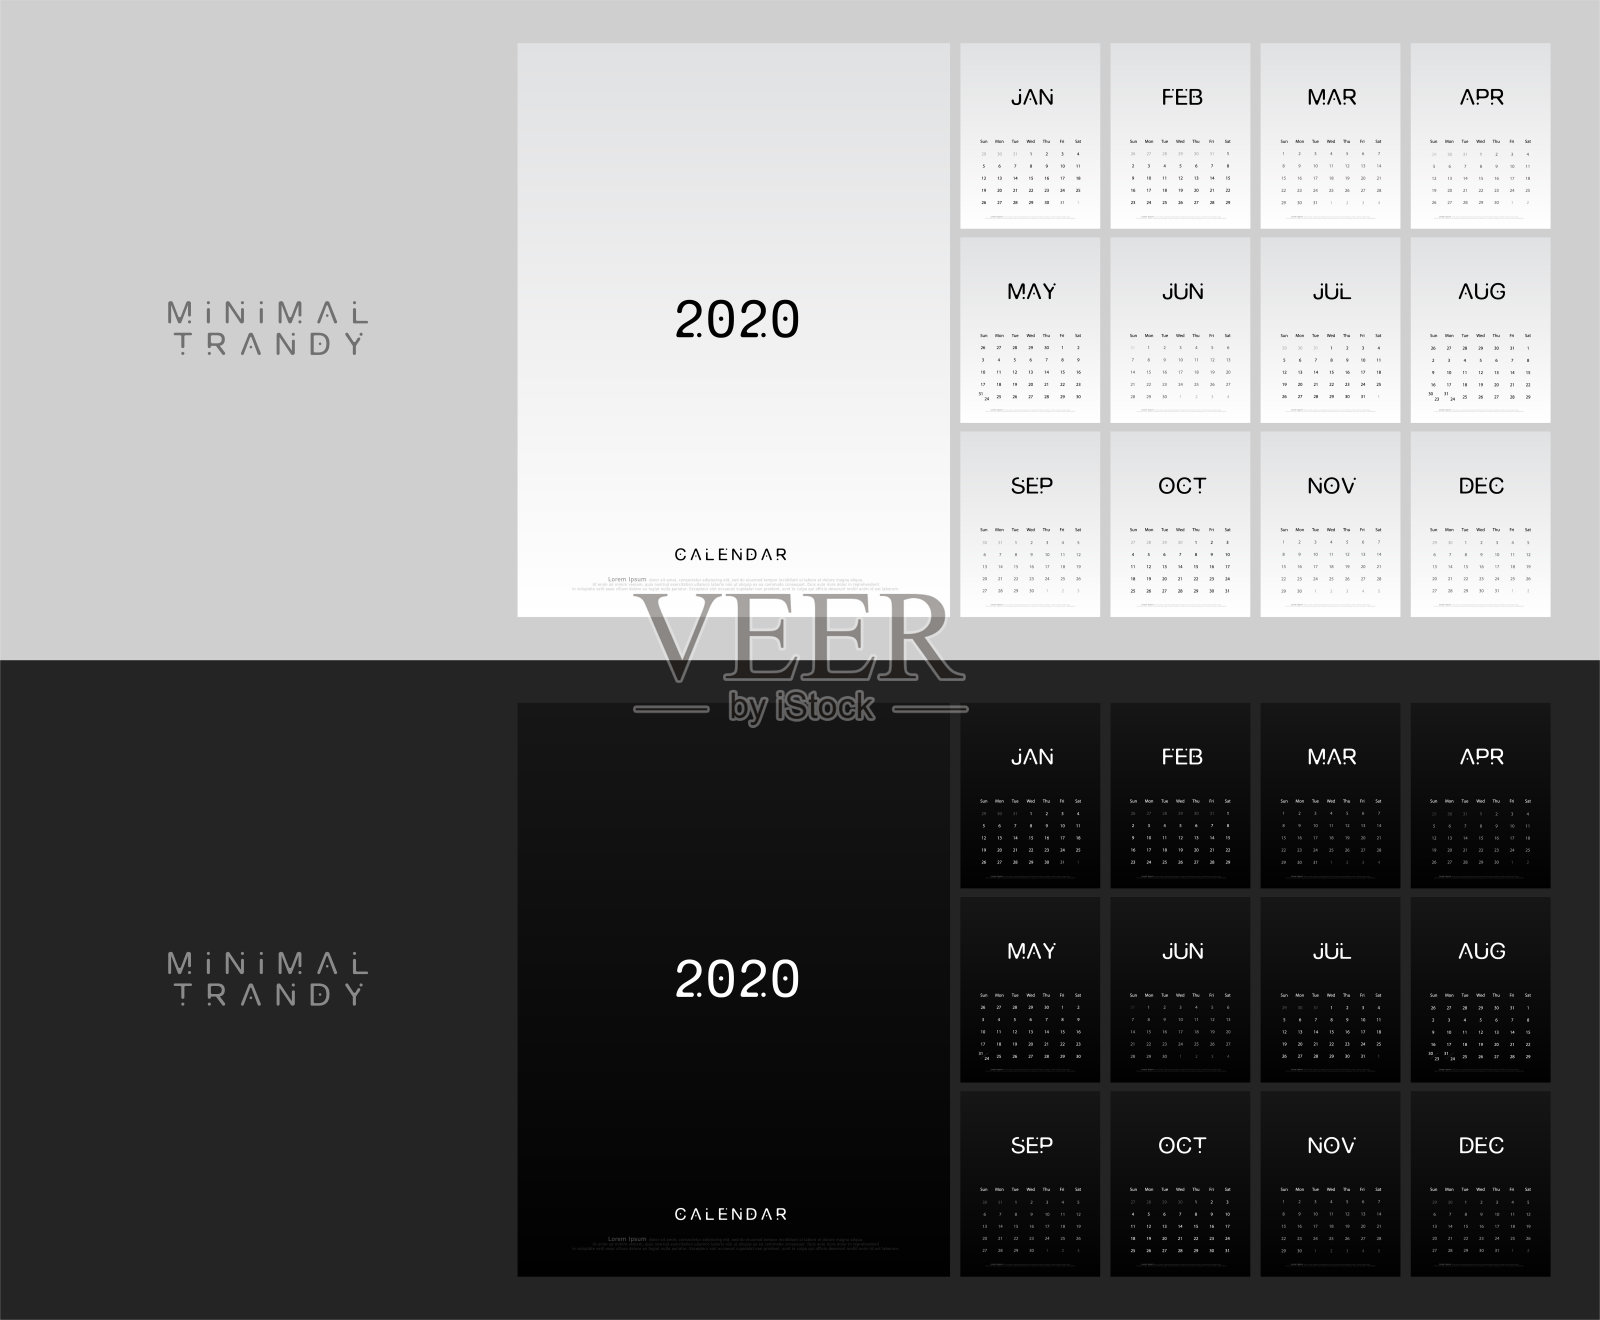 2020年日历最小化表规划简洁风格。上周星期天开始。时尚简约的黑白印刷模板。矢量图设计模板素材